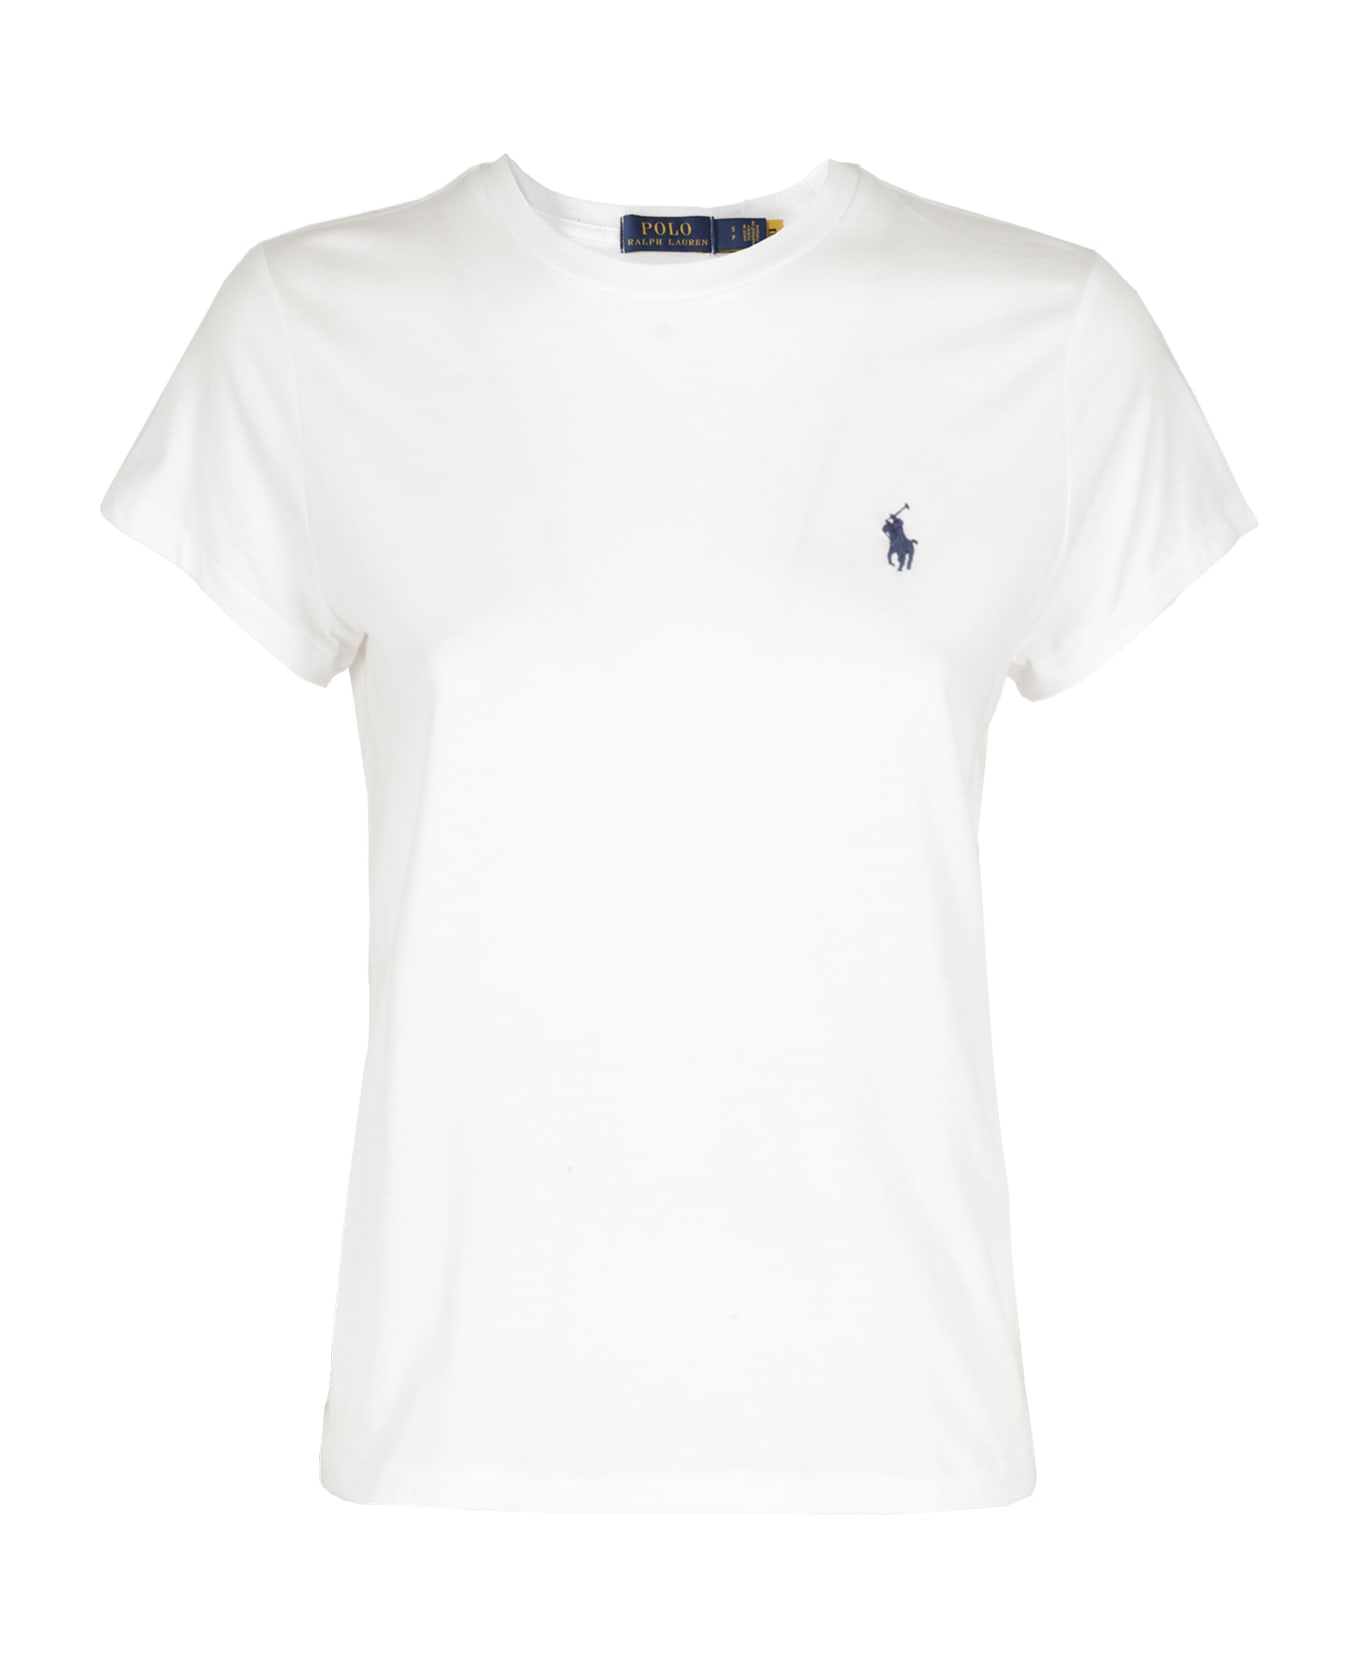 Polo Ralph Lauren New Rltpp - White Tシャツ